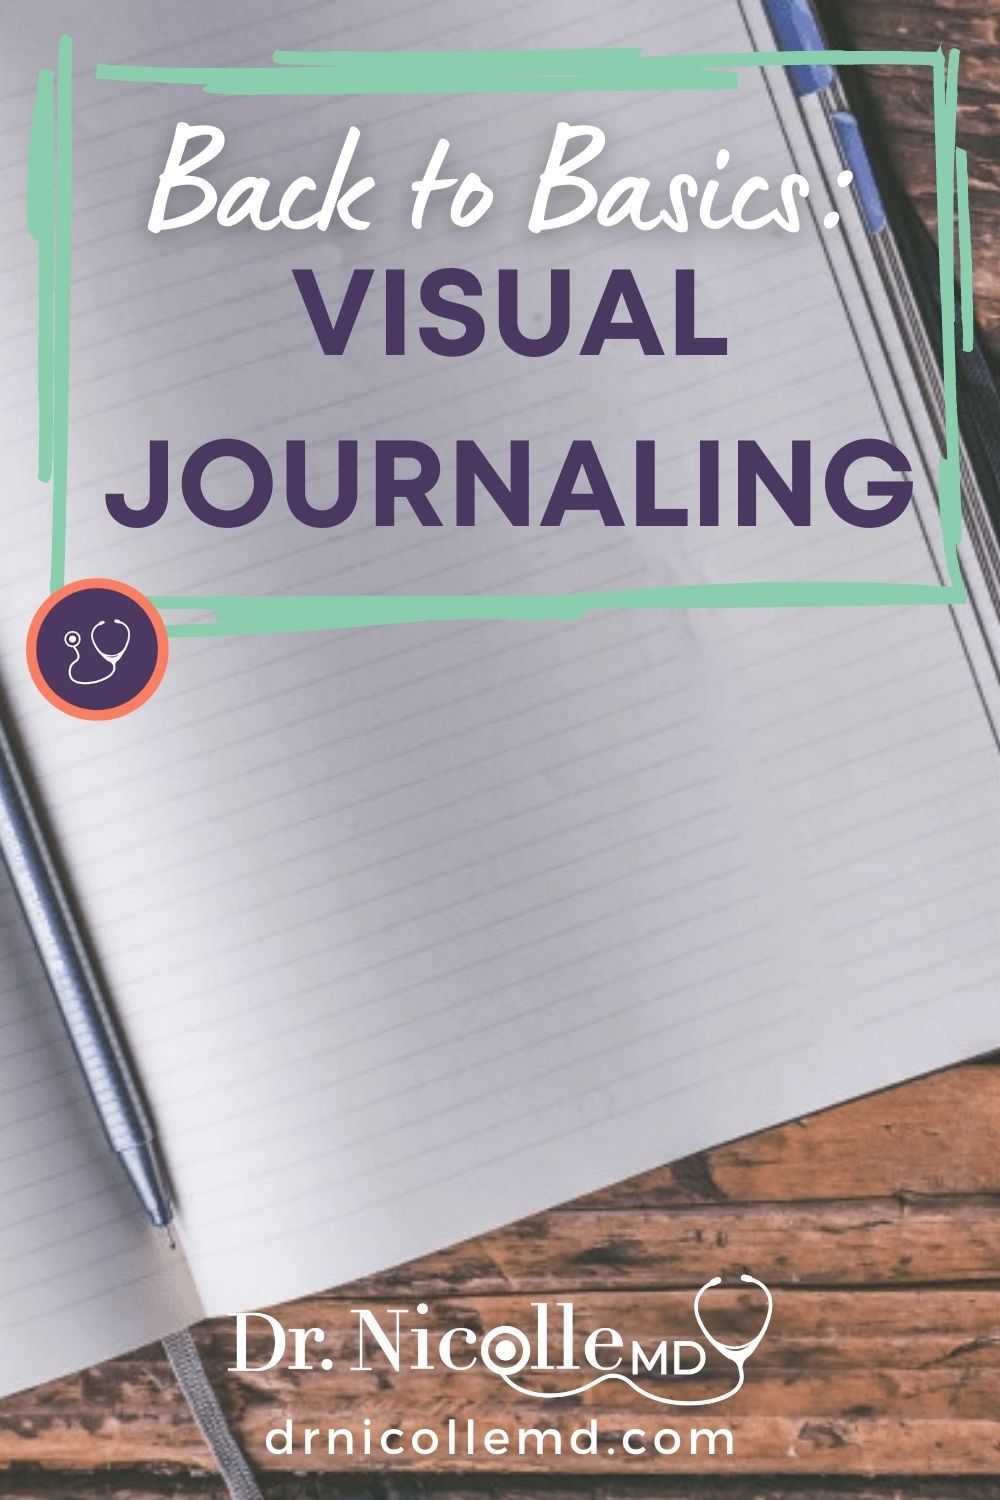 Back to Basics: Visual Journaling